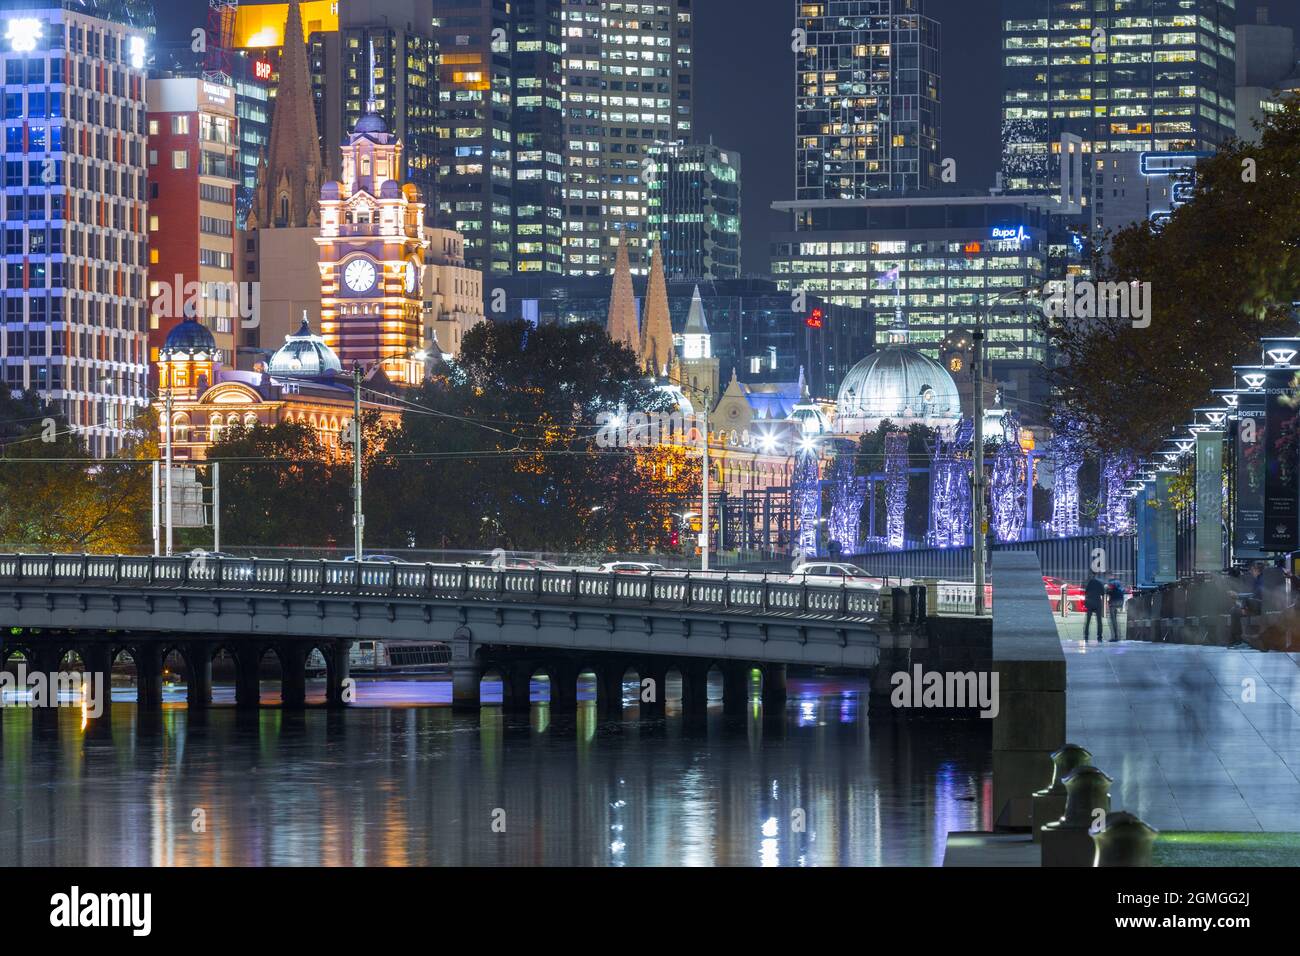 Melbourne, Australie, vue de nuit depuis la Yarra River et Queens Bridge Street, vue en premier plan reliant le quartier des affaires de Melbourne à Southbank. Banque D'Images